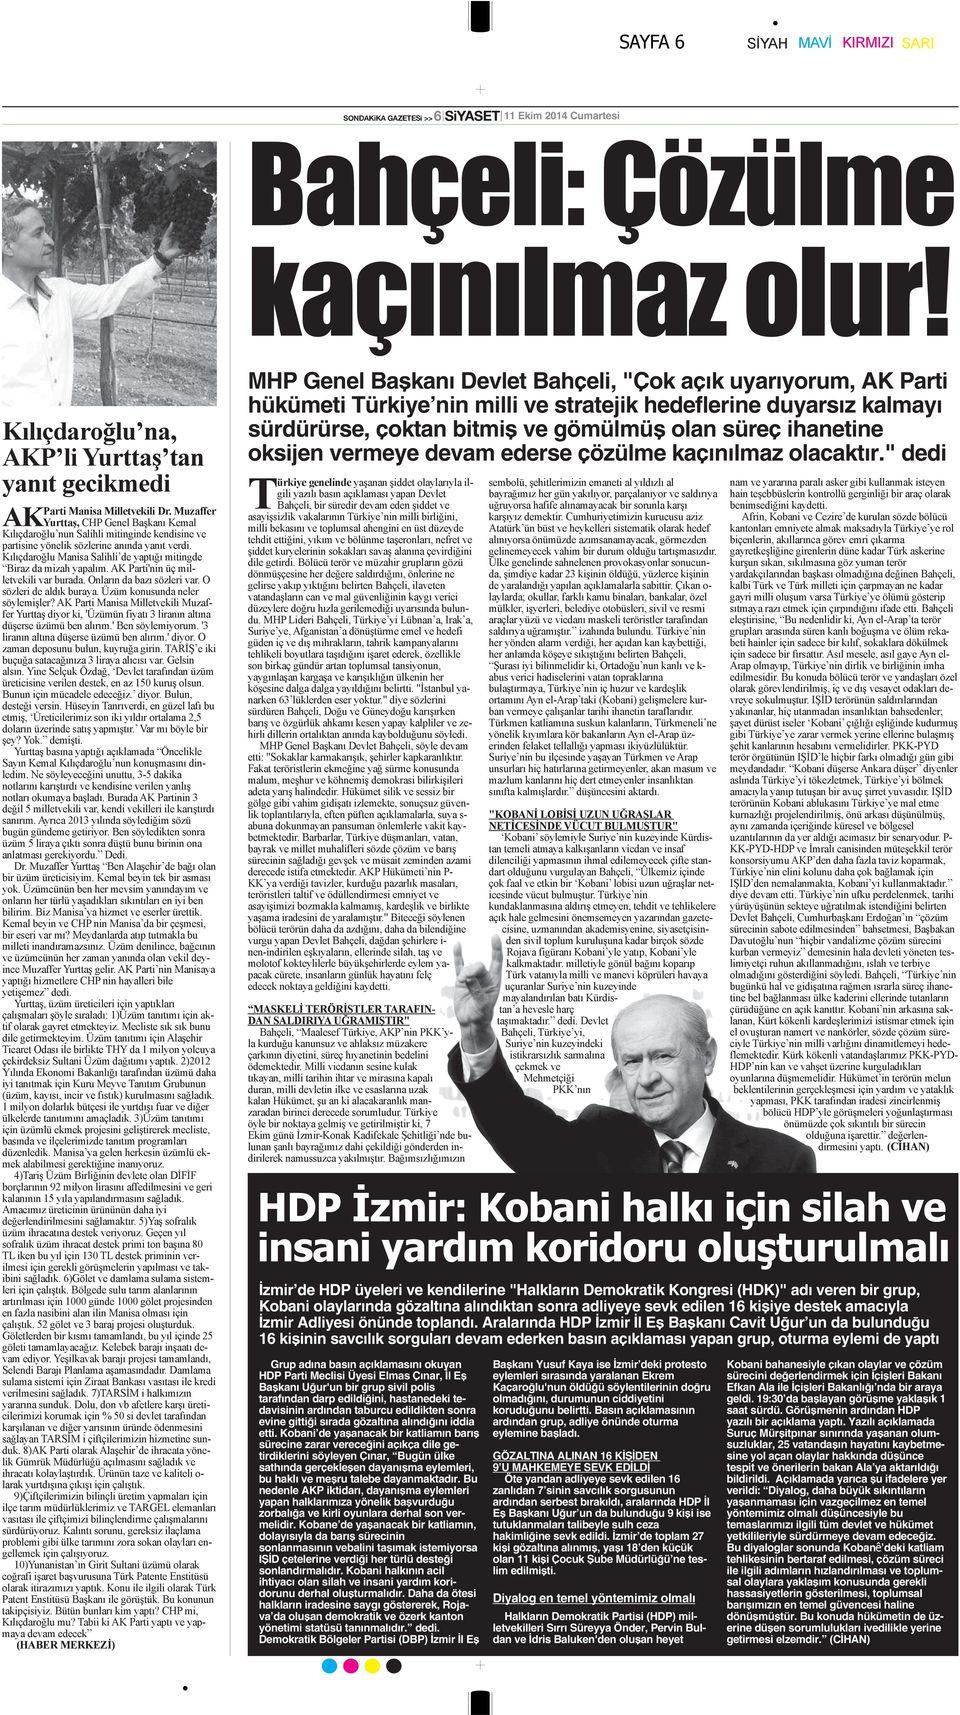 " dedi İzmir de HDP üyeleri ve kendilerine "Halkların Demokratik Kongresi (HDK)" adı veren bir grup, Kobani olaylarında gözaltına alındıktan sonra adliyeye sevk edilen 16 kişiye destek amacıyla İzmir